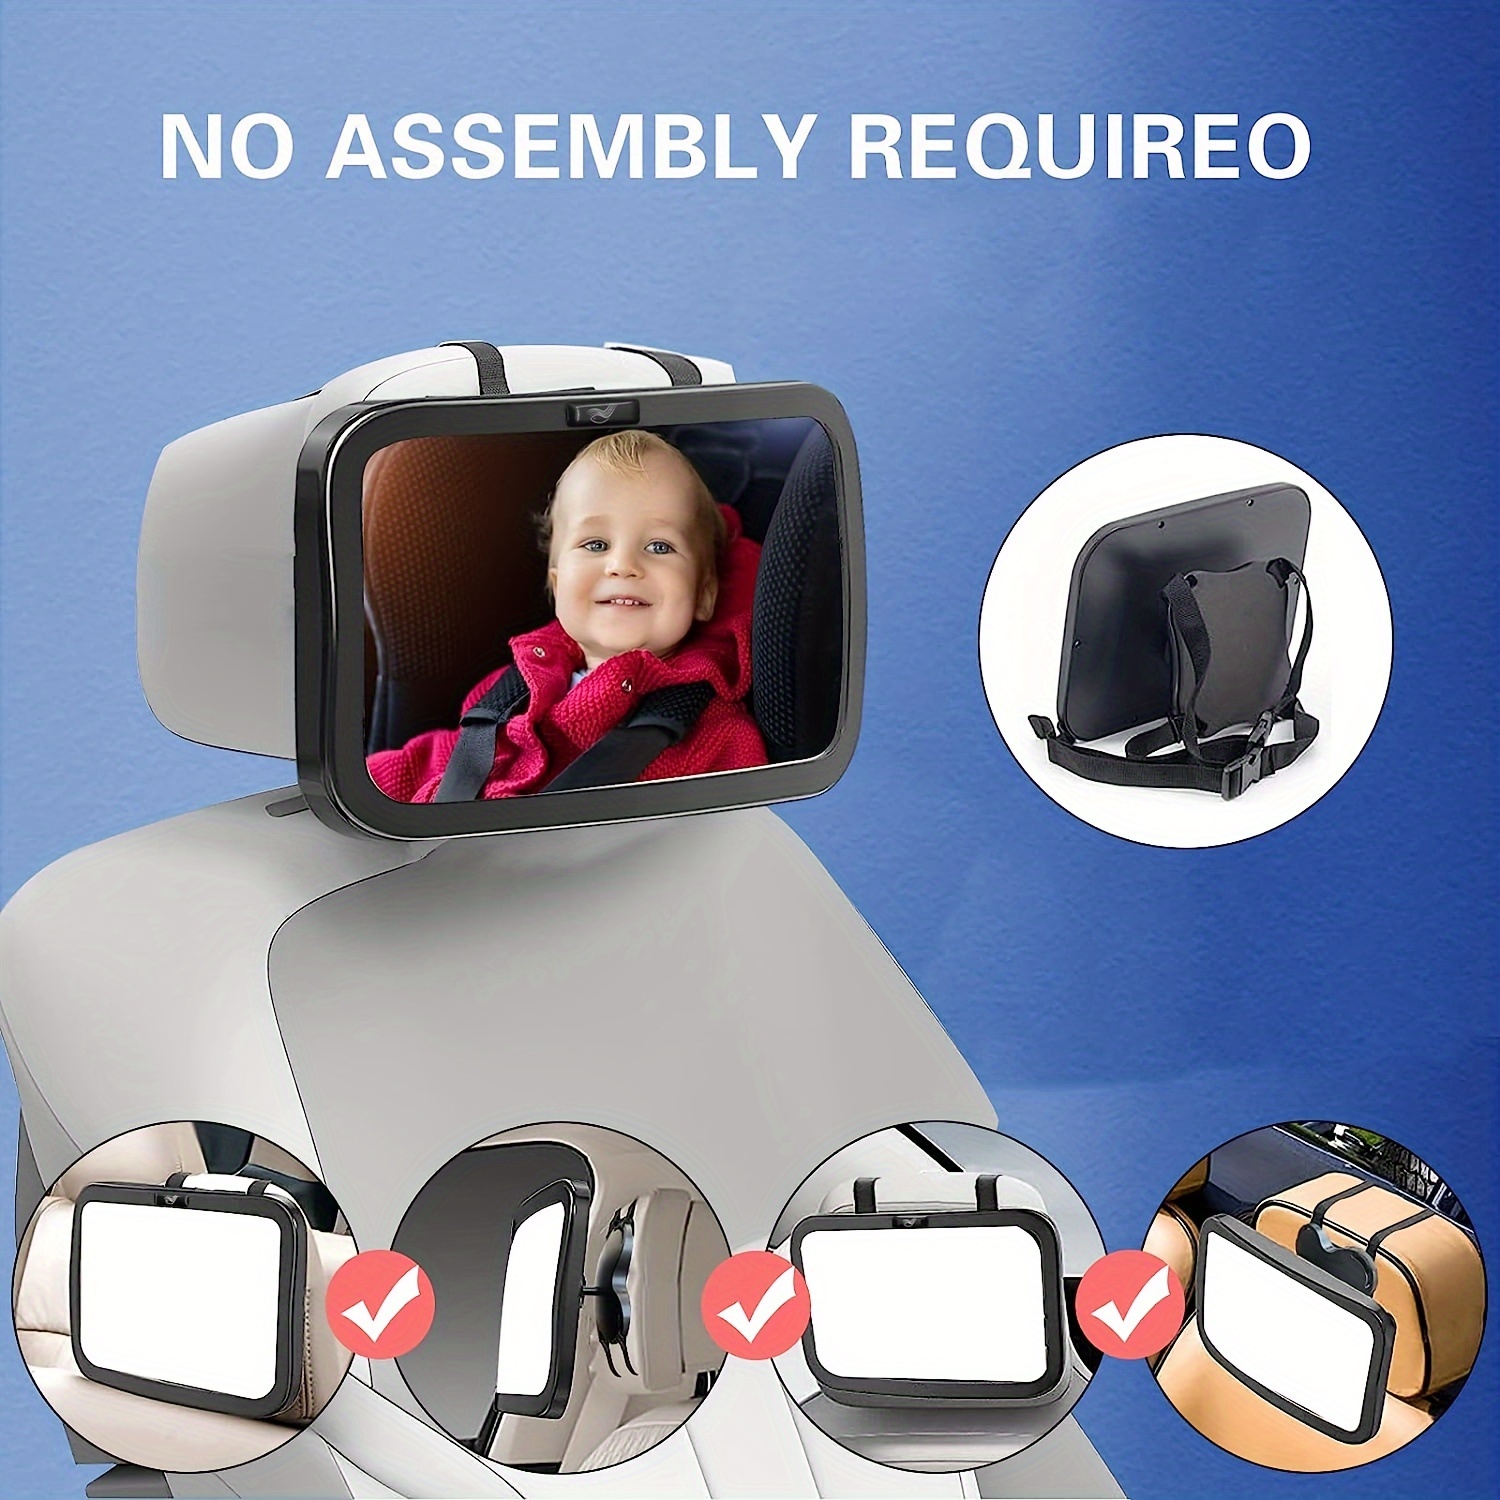 Baby-spiegel Mit 2 Haken, 1 Stück Warnaufkleber, Baby-rückspiegel Zur  Beobachtung Des Rücksitzes, Baby-auto-beobachtungsspiegel,  Sicherheits-autospiegel, Sparen Sie Mehr Mit Ausverkaufsangeboten